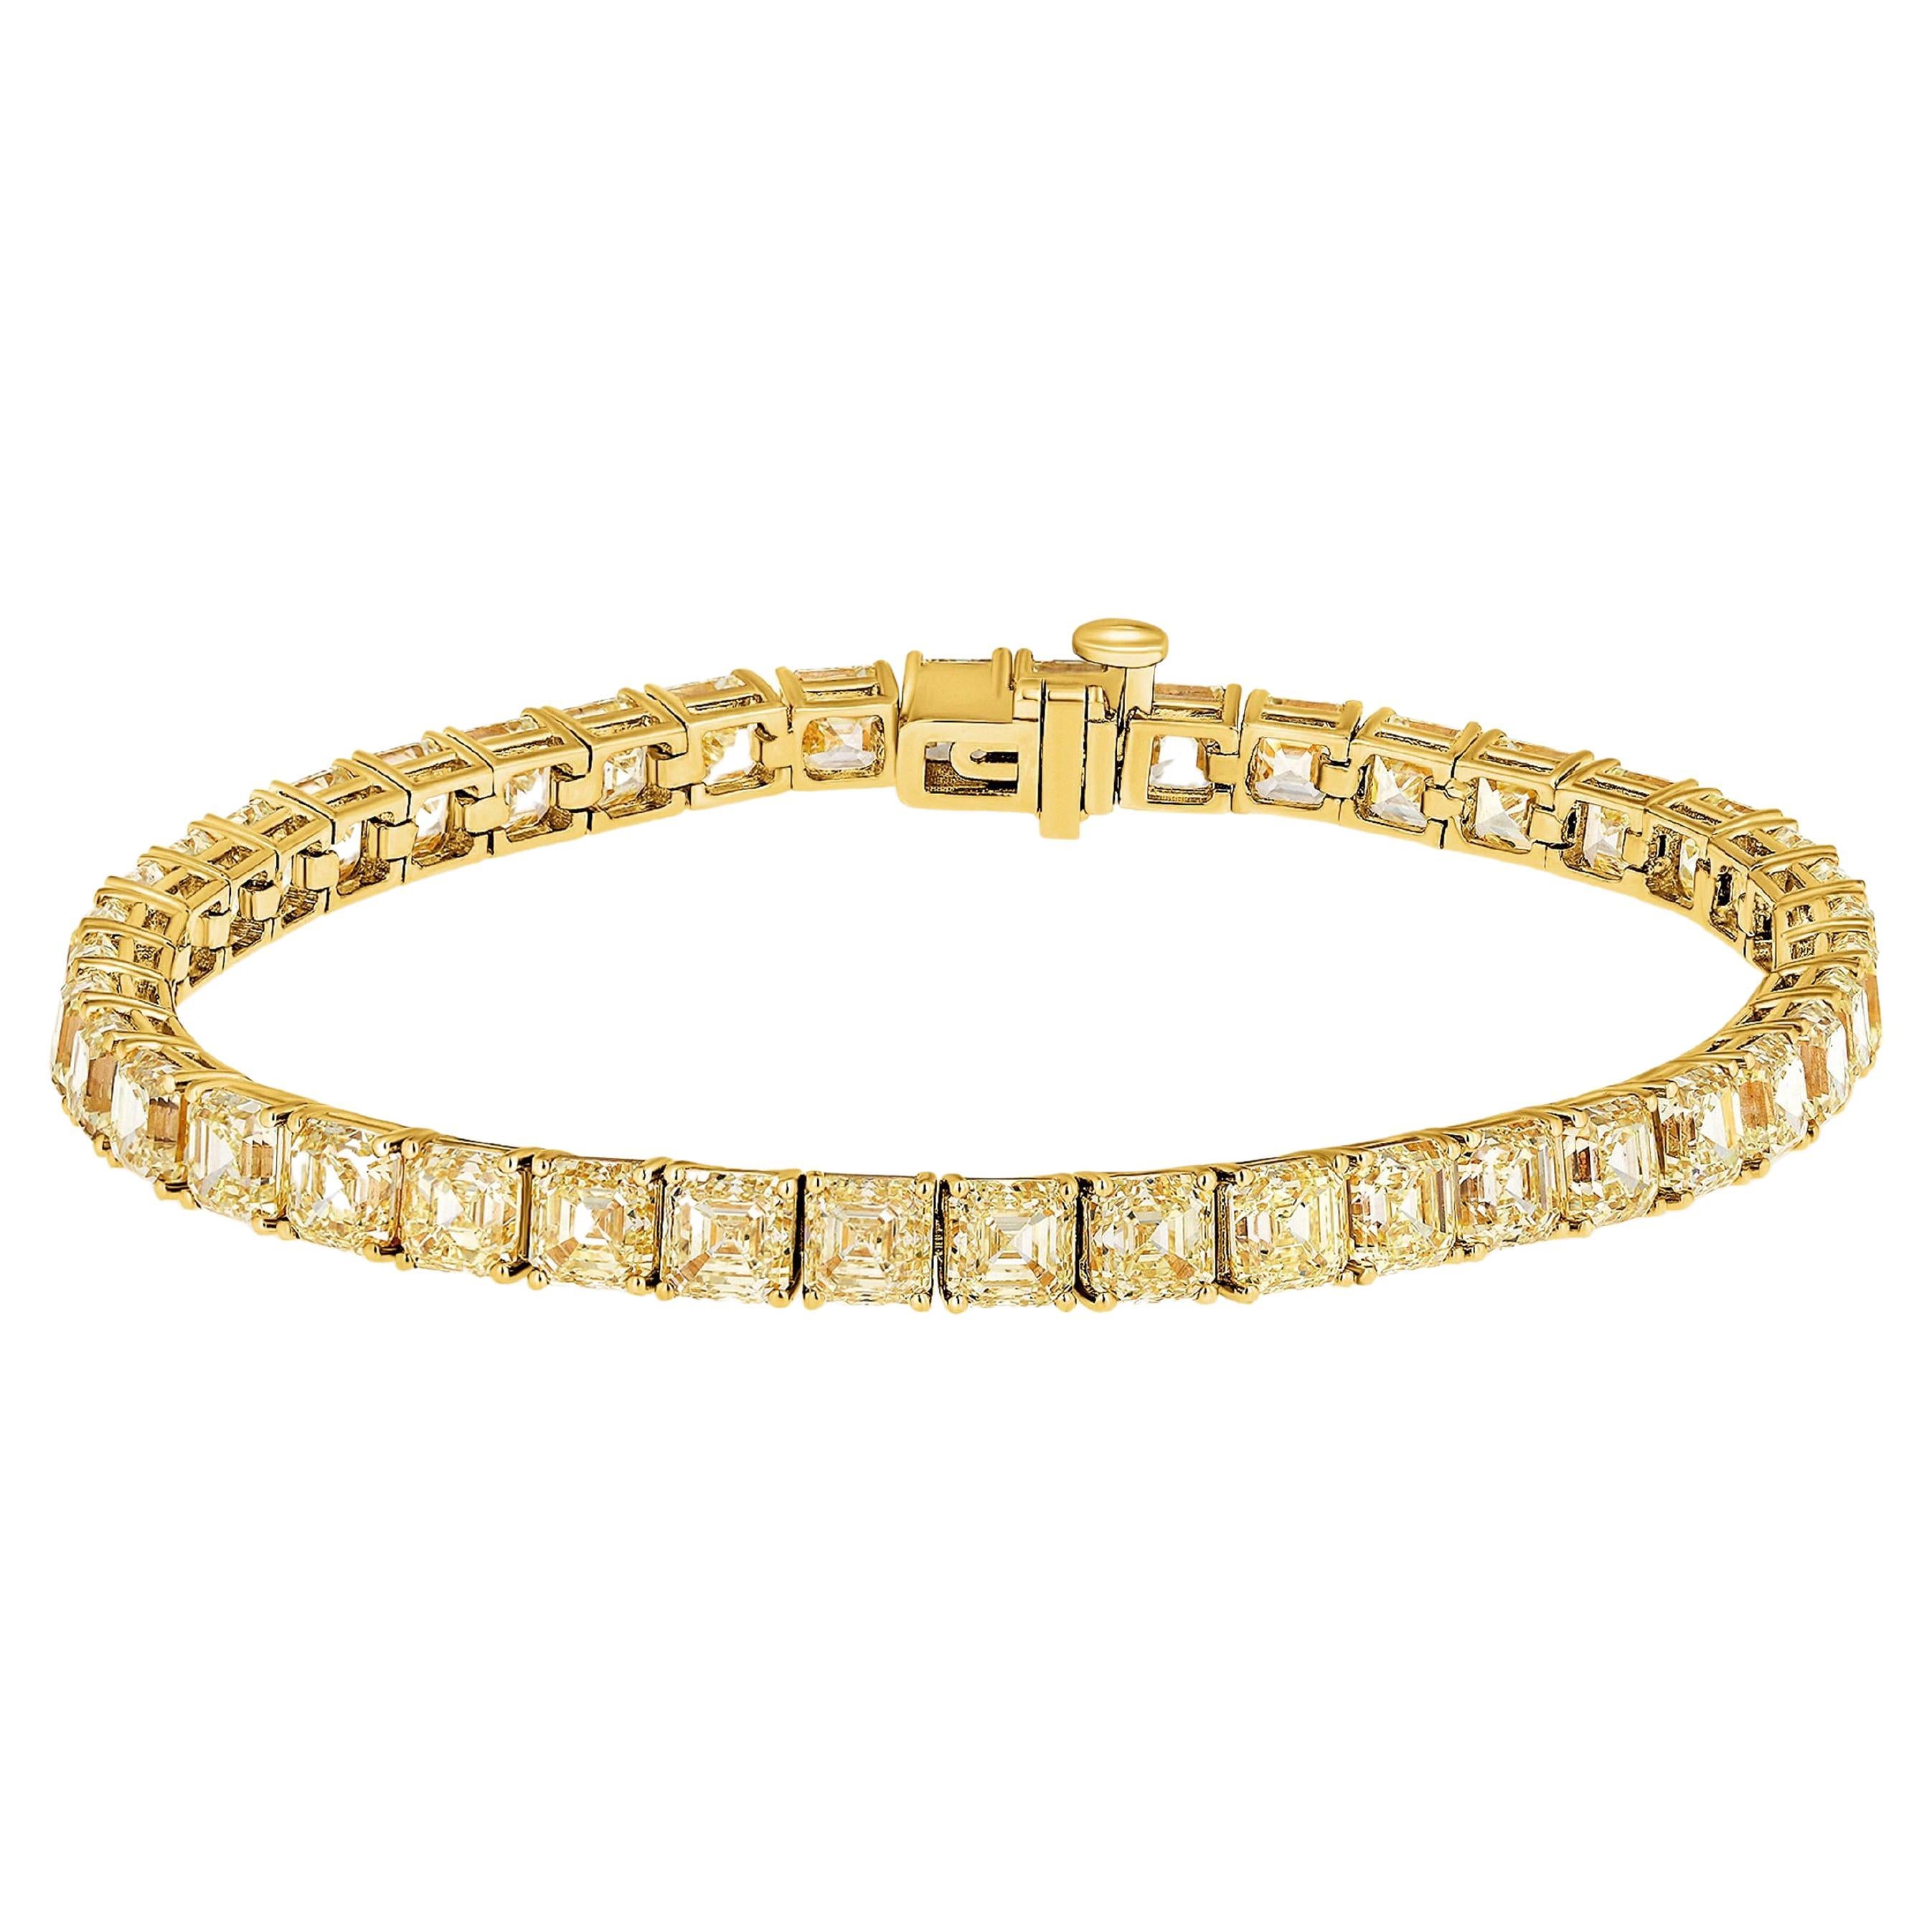 Bracelet tennis en or jaune 18 carats et diamants naturels taille Asscher de 20 carats.